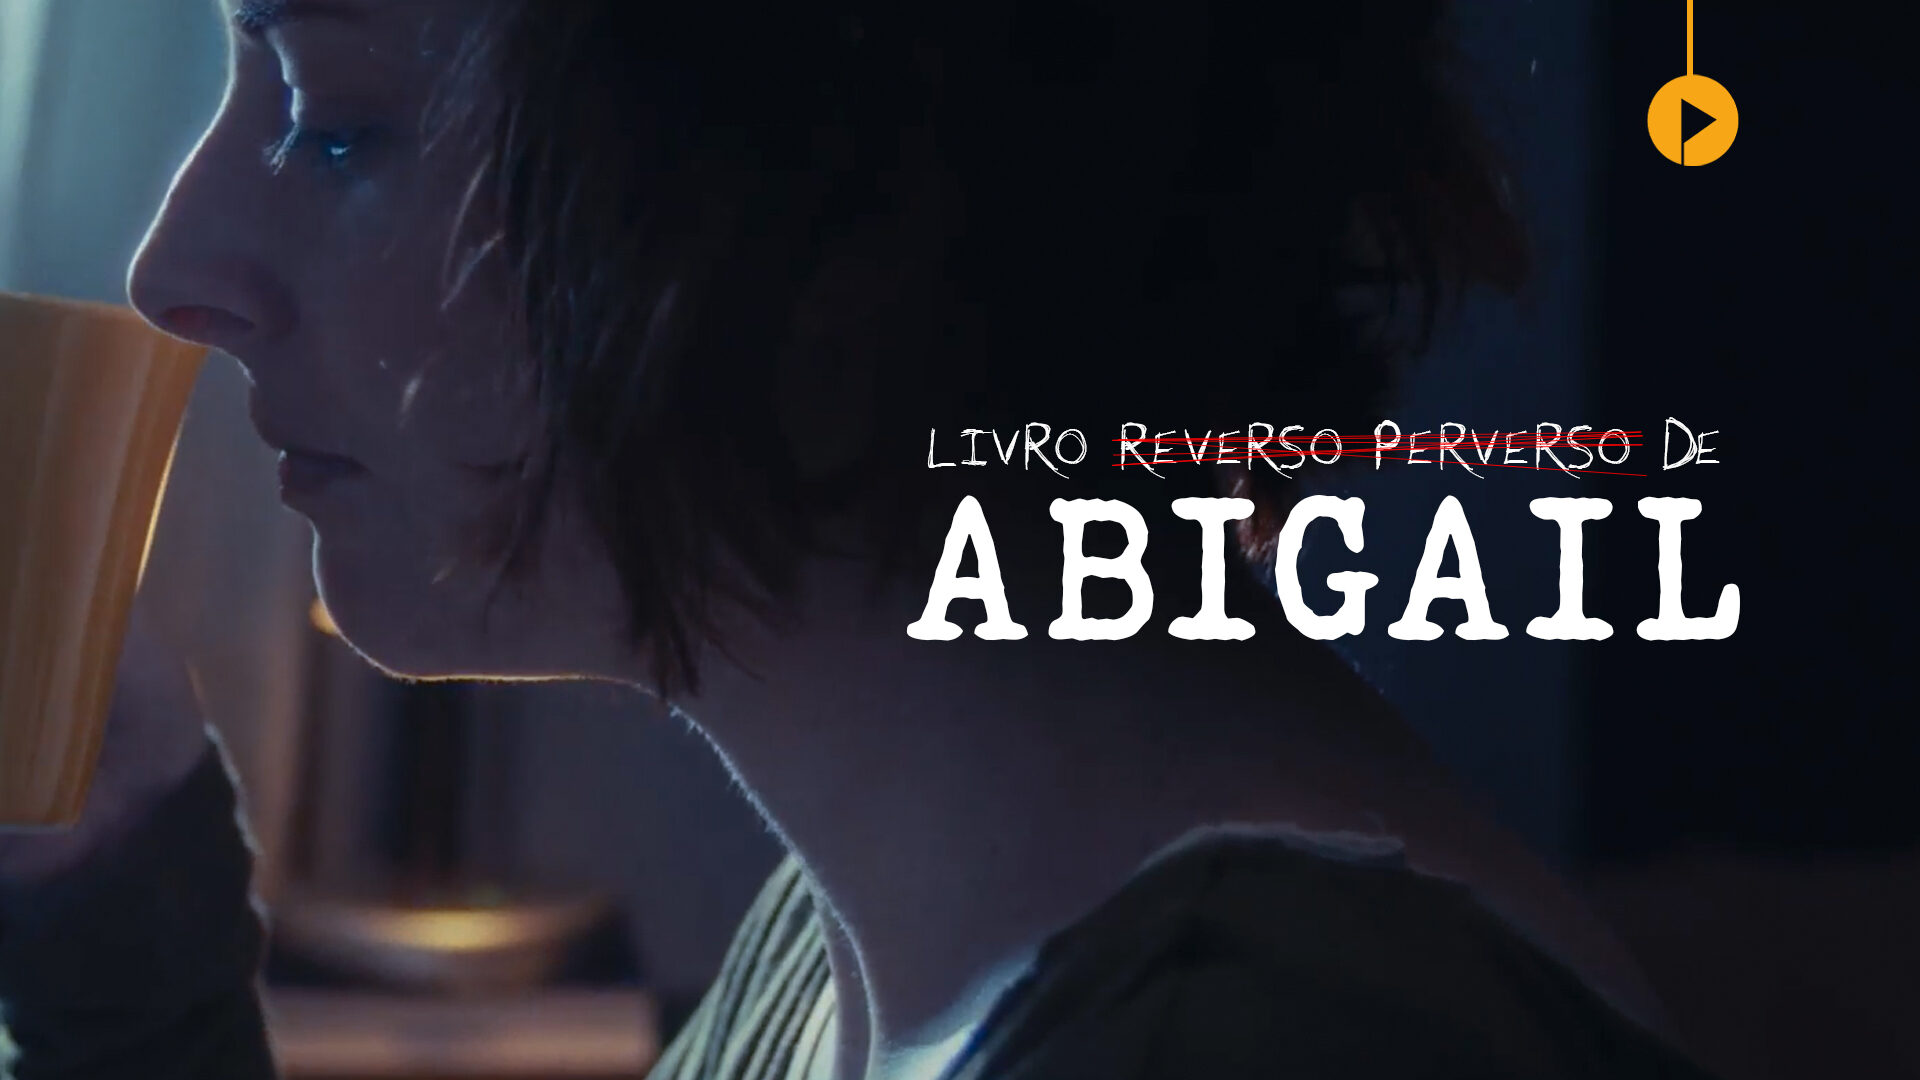 Livro Reverso e Perverso de Abigail - Horizontal